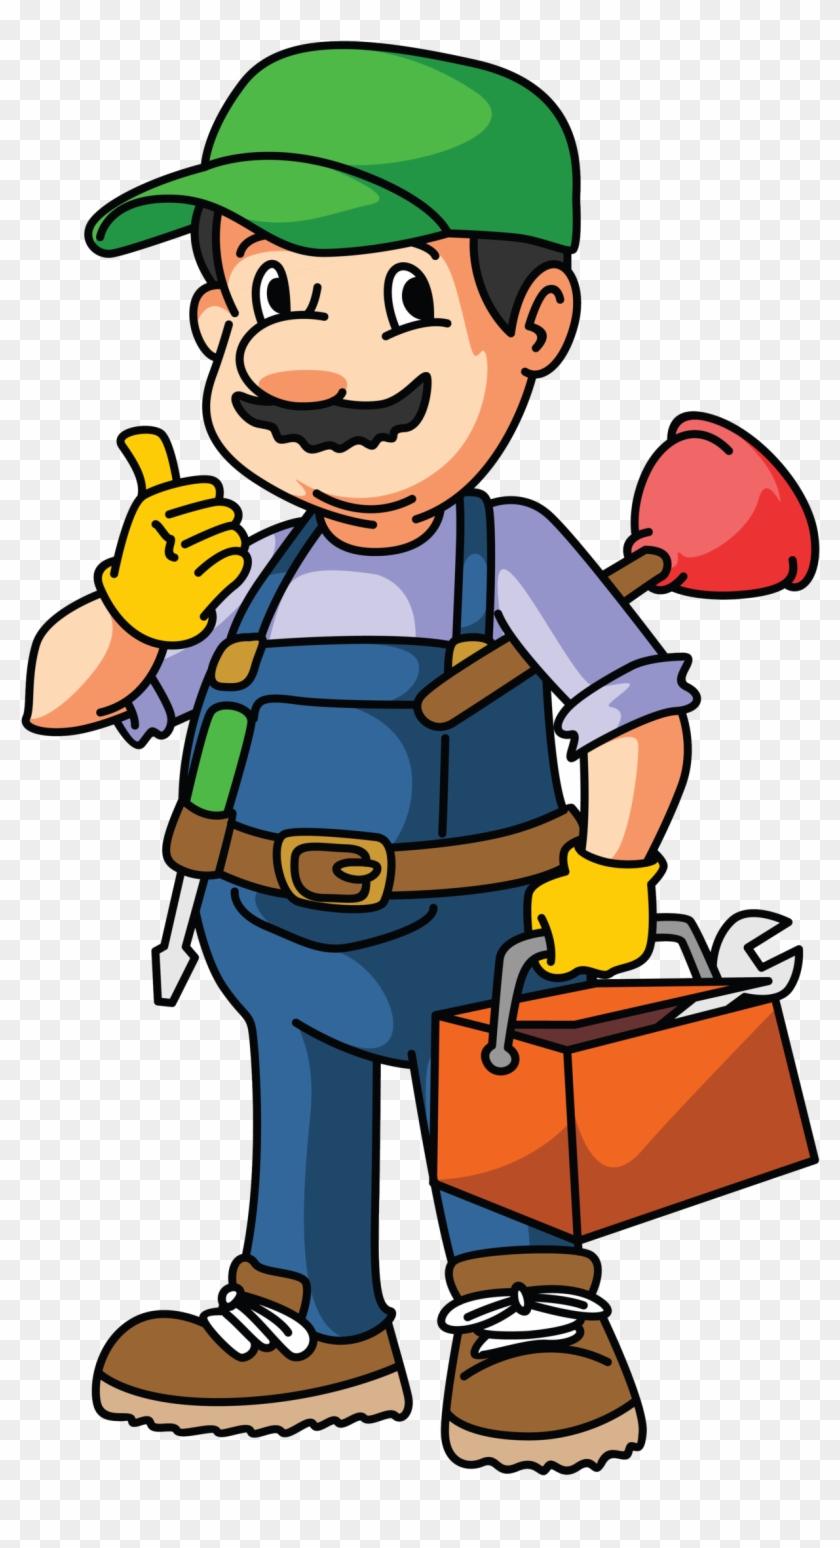 Minor Plumbing Repairs - Minor Plumbing Repairs #1544045